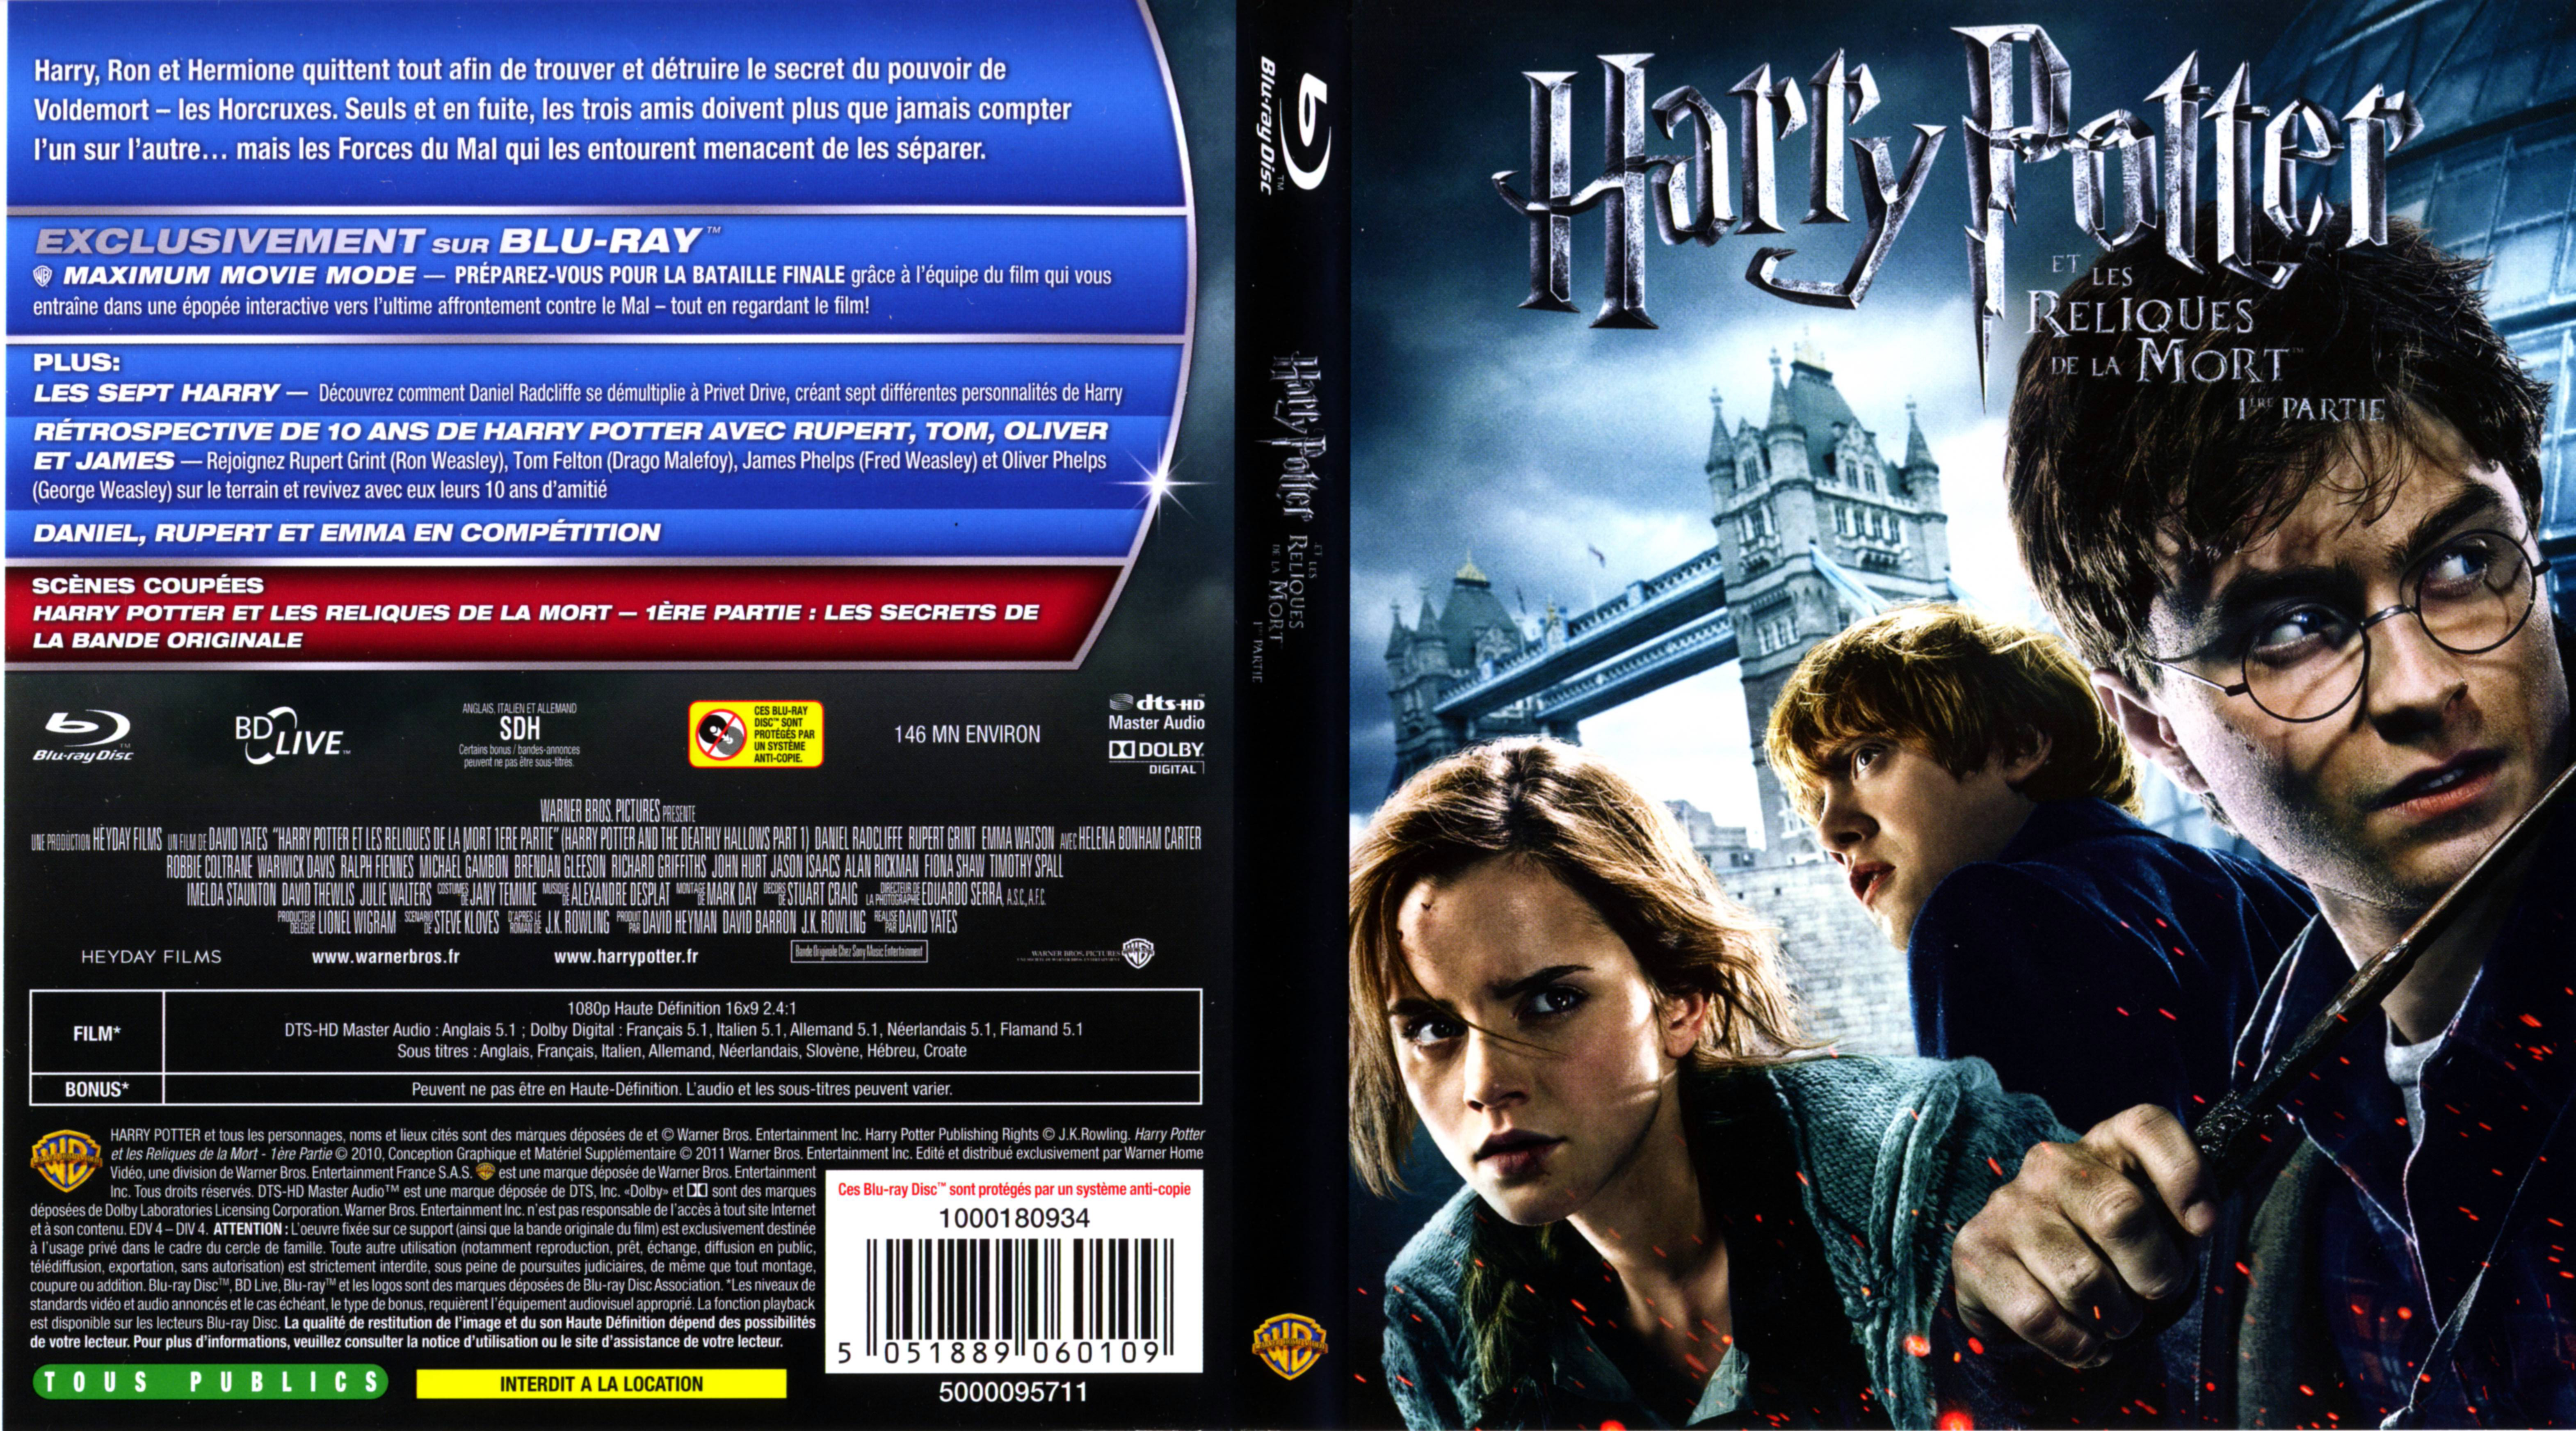 Jaquette DVD Harry Potter et les reliques de la mort - 1re partie (BLU-RAY) v2